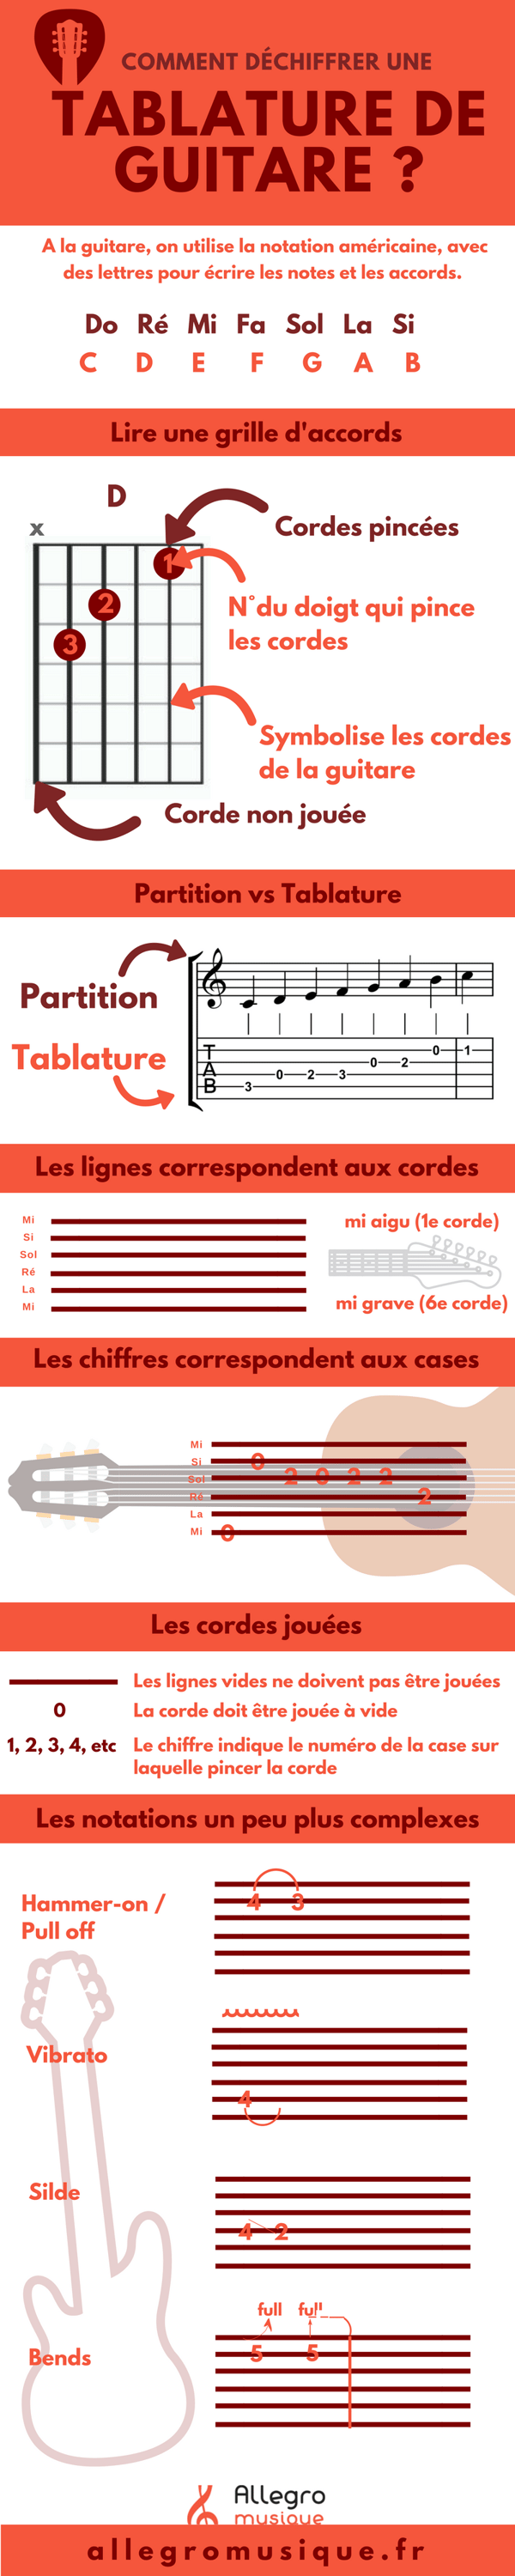 Partage de tablatures (grilles, partitions) pour guitare